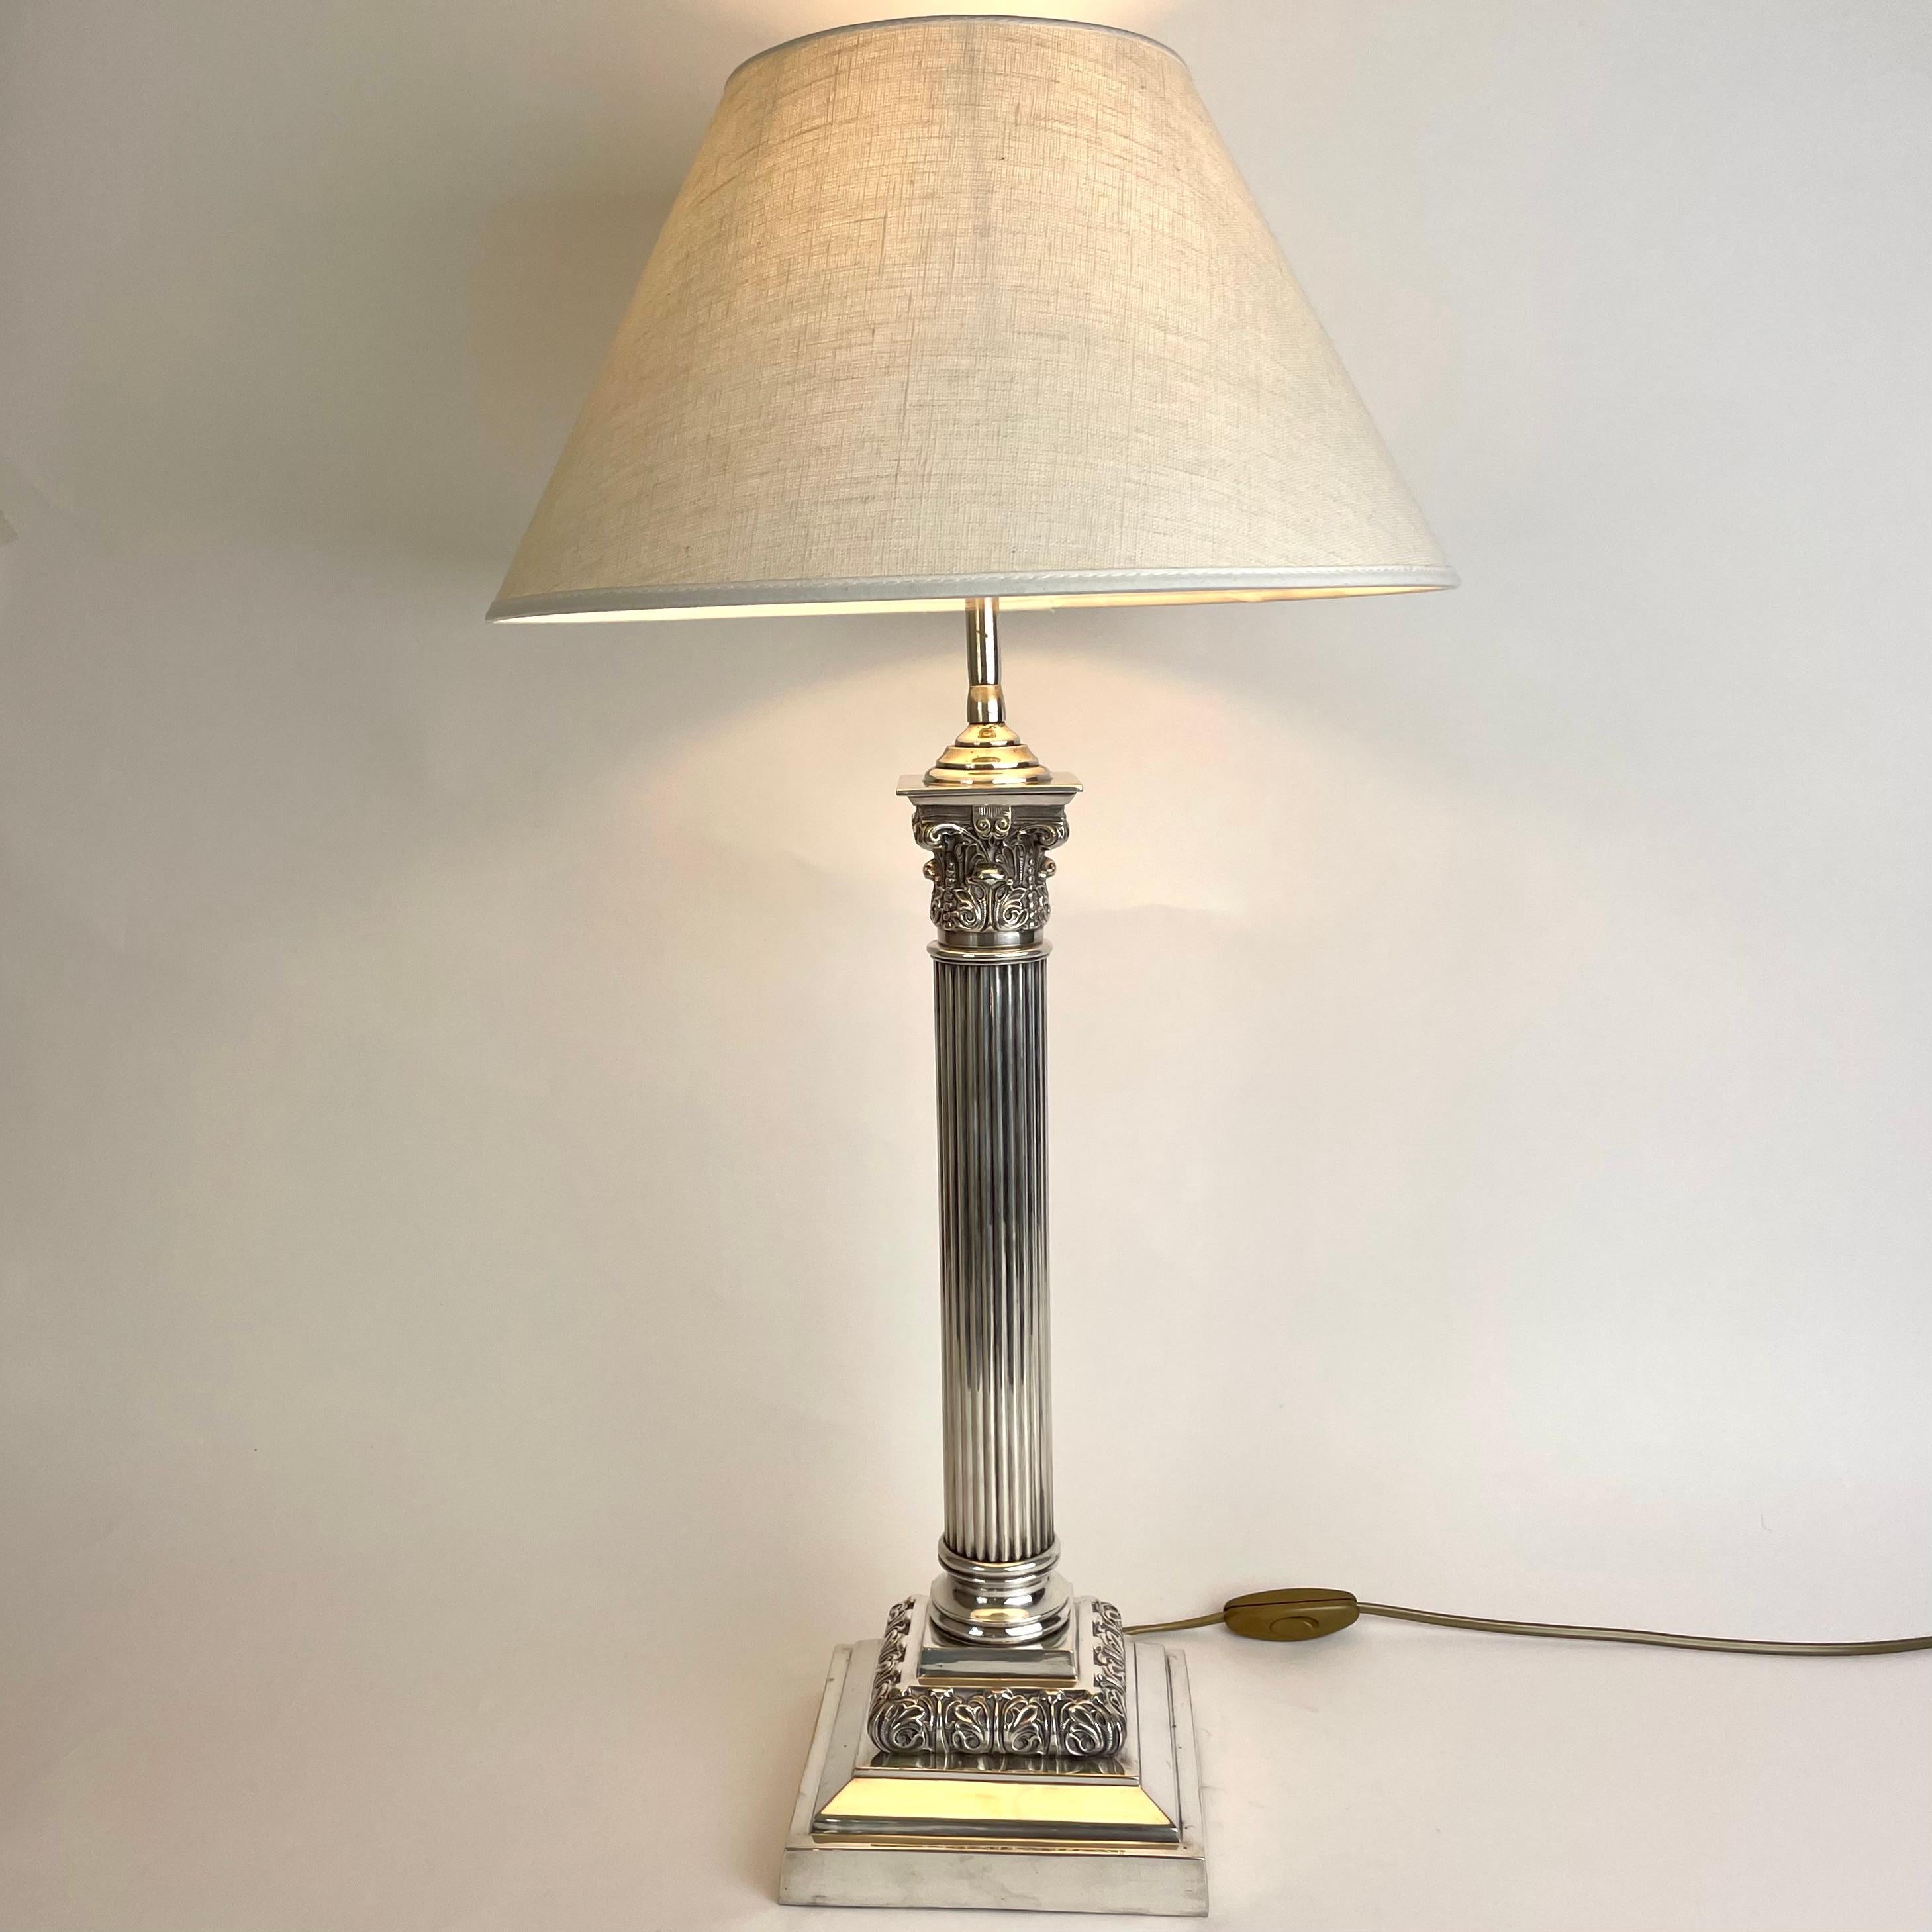 Raffinierte versilberte Tischlampe mit klassischer Säule aus dem späten 19. Jahrhundert. Ursprünglich eine Petroleumlampe, die Anfang des 20. Jahrhunderts in eine Tischlampe umgewandelt wurde.

Neu verkabelte Elektrizität 

Der Lampenschirm aus